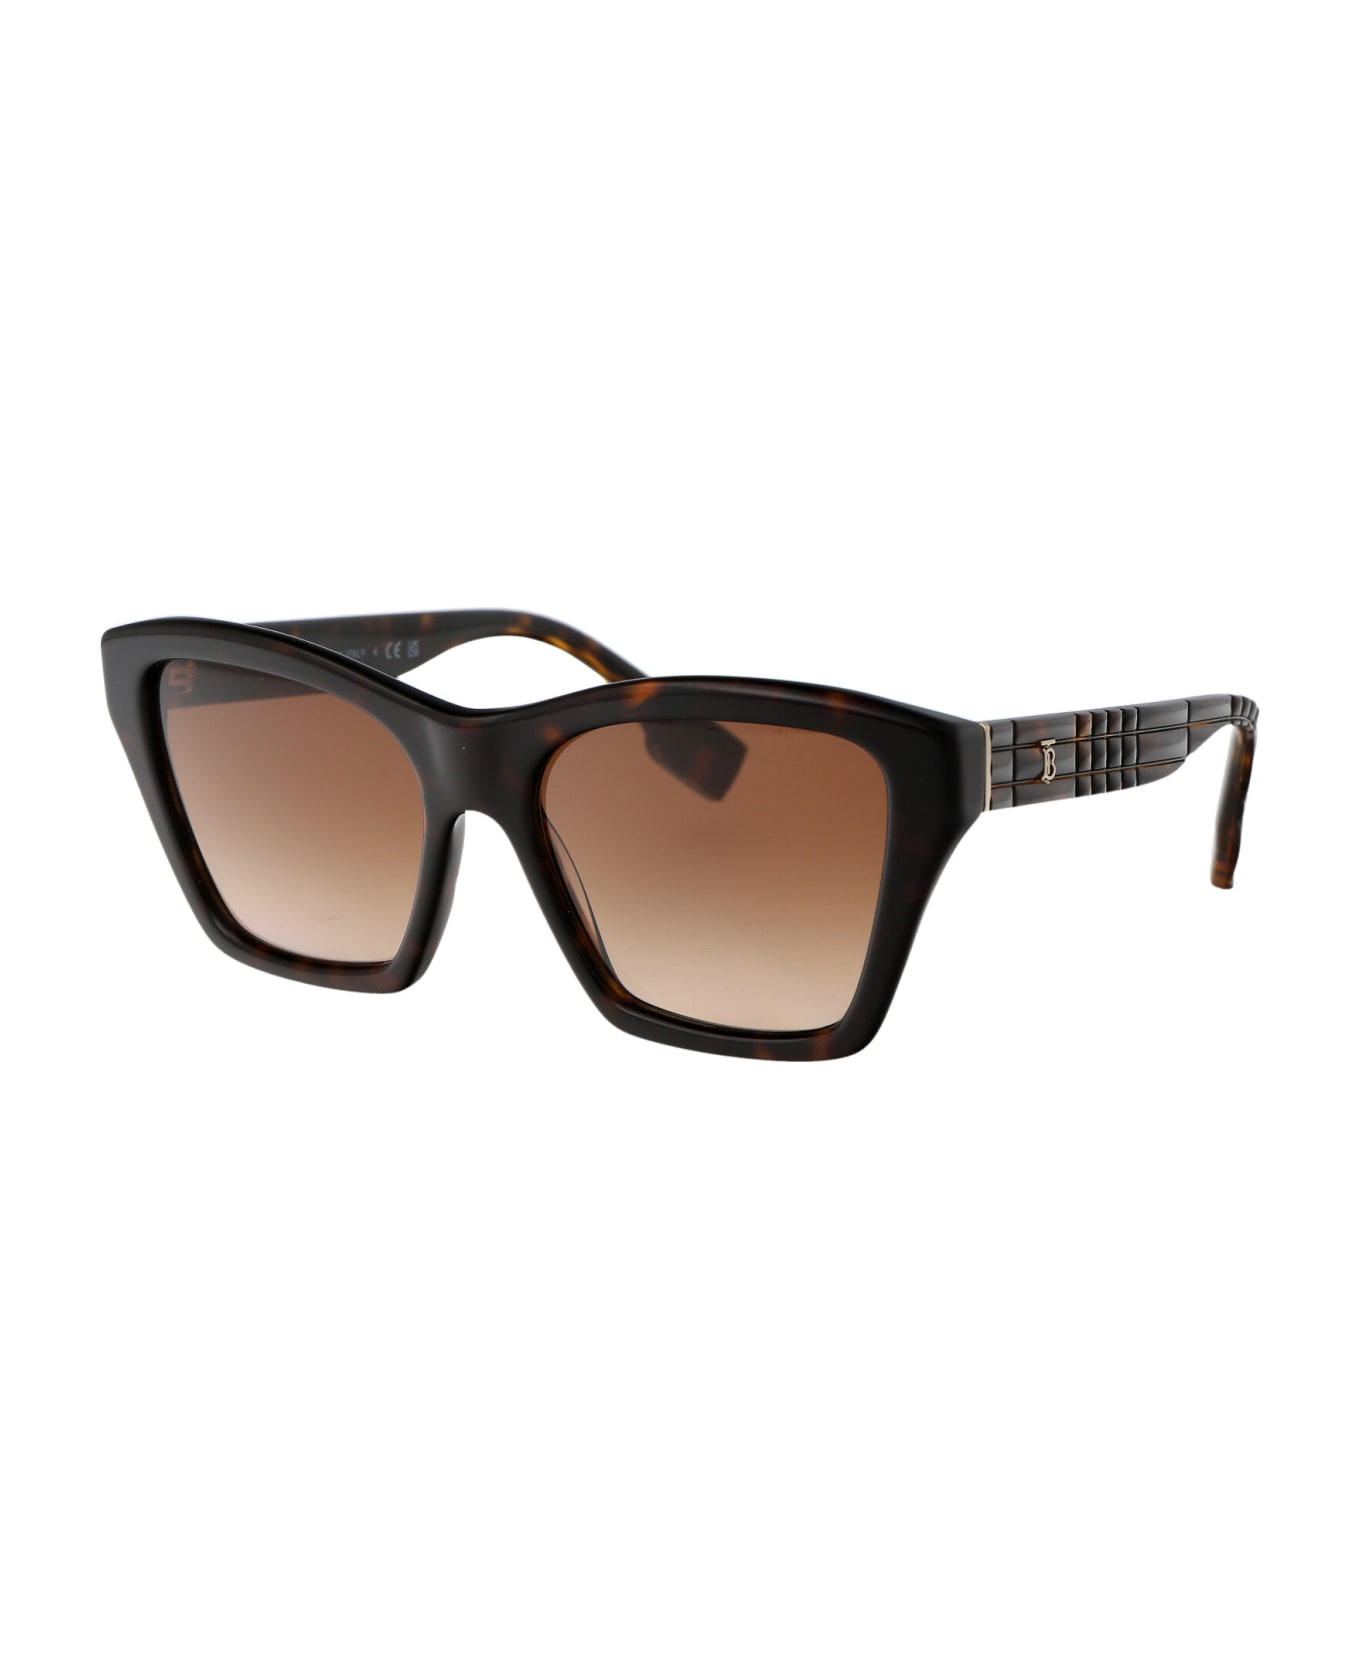 Burberry Eyewear Arden Sunglasses - 300213 DARK HAVANA